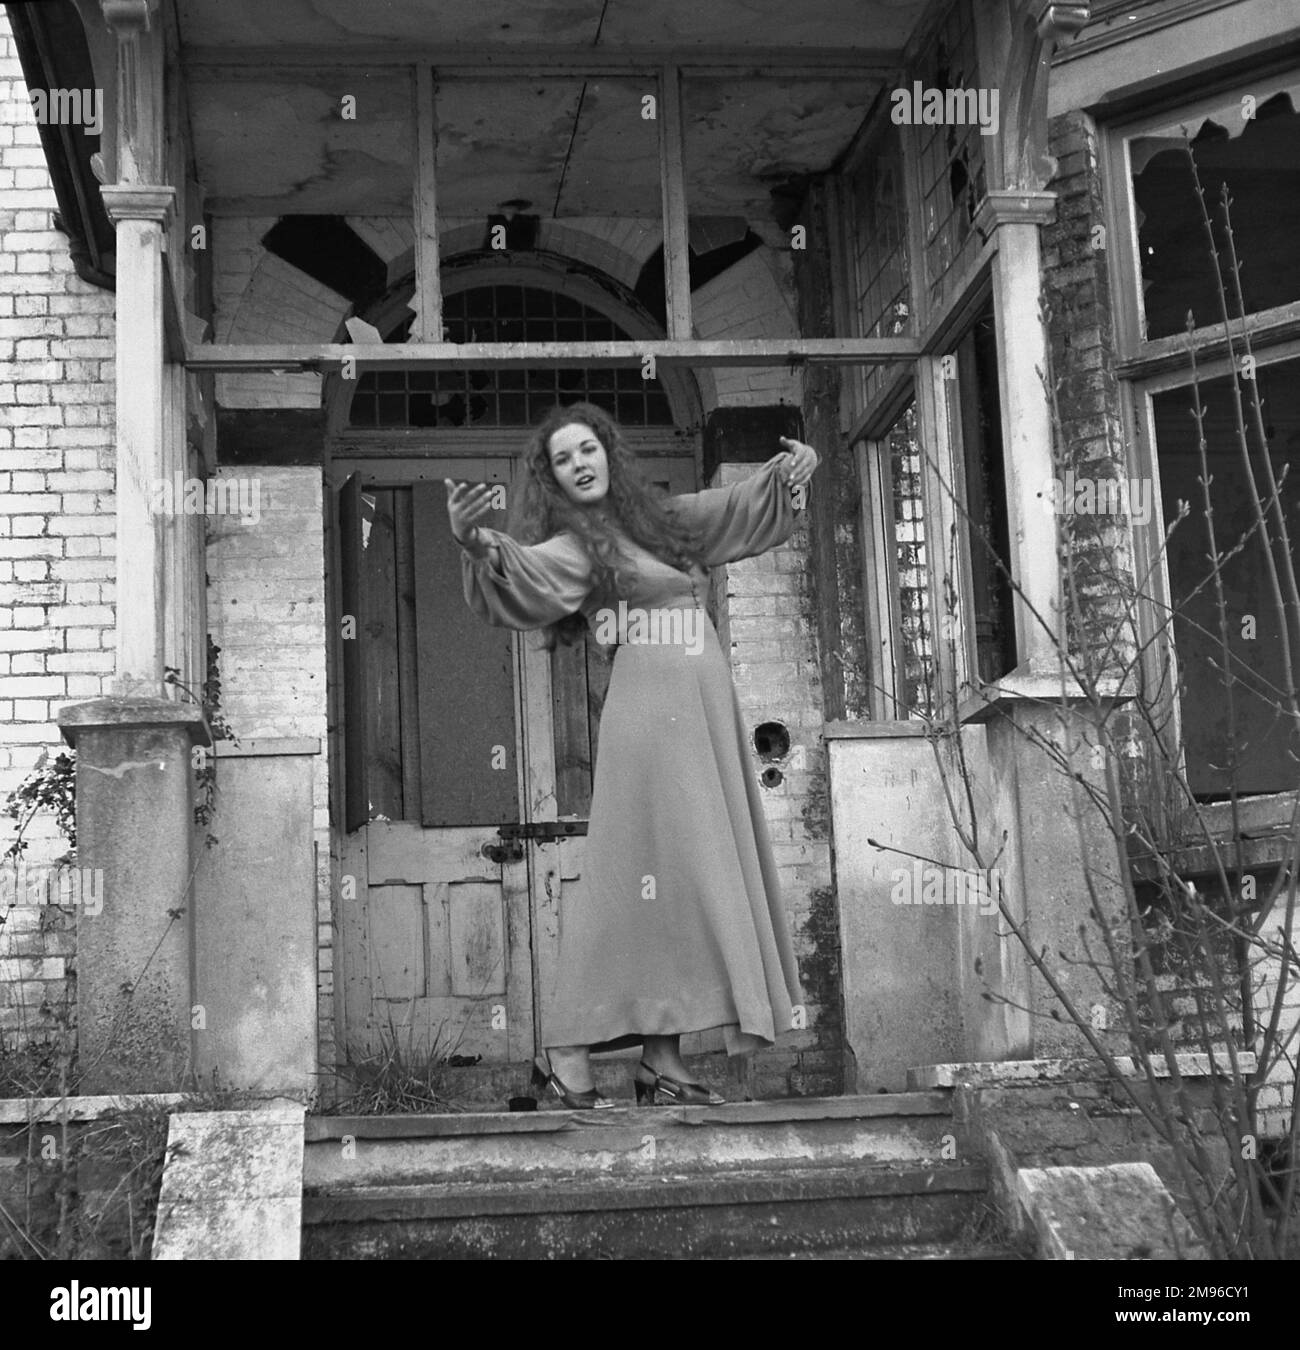 Une jeune femme dans une longue robe pose artistiquement à la porte d'une maison abandonnée avec des fenêtres cassées. Banque D'Images